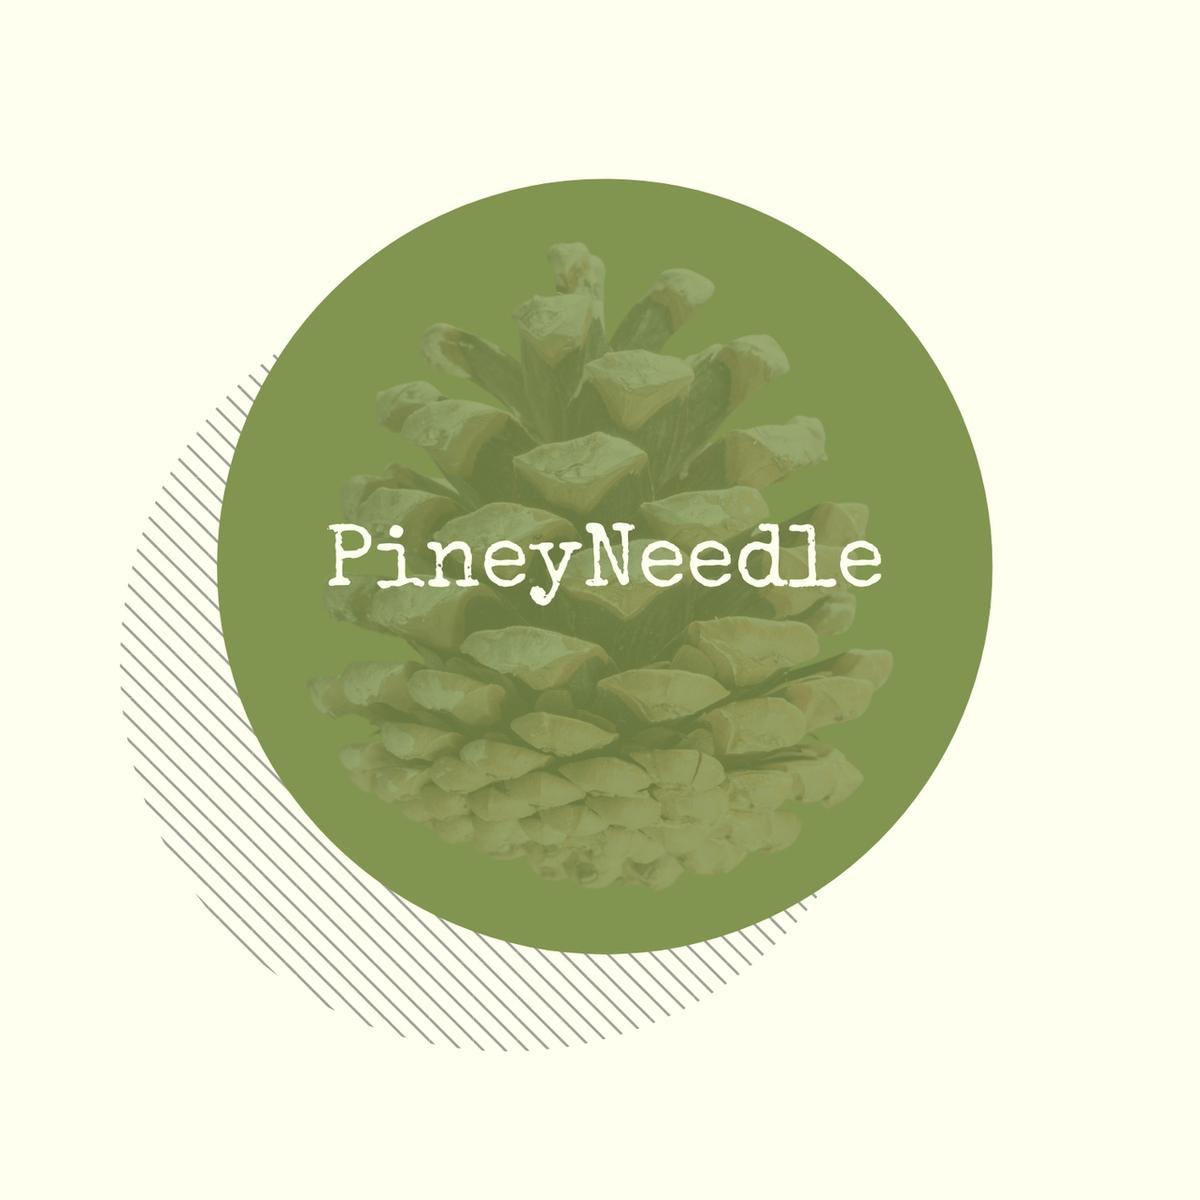 PineyNeedle